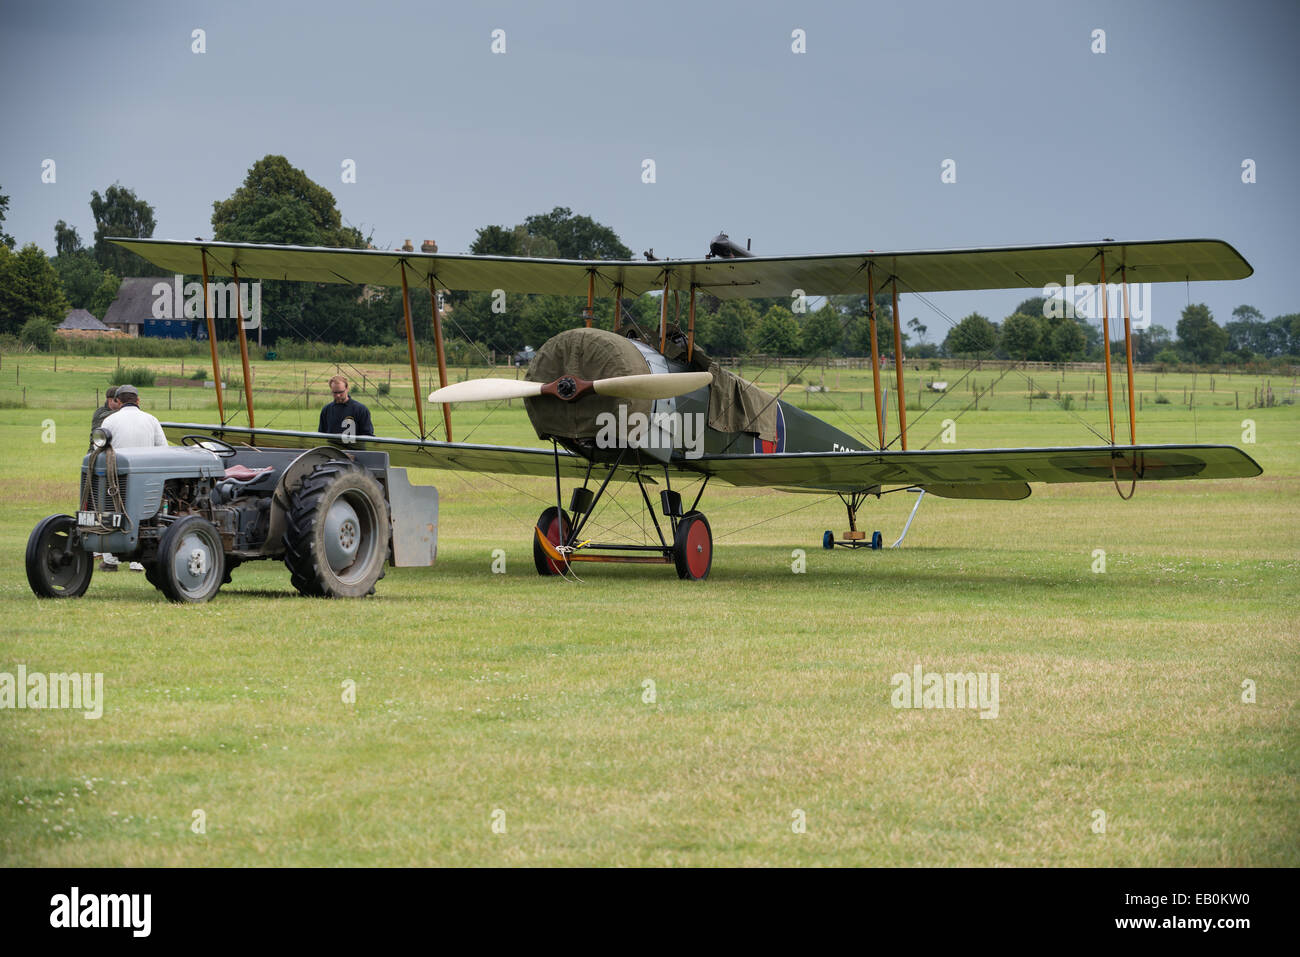 Biggleswade, UK - 29 juin 2014 : des avions d'entraînement vintage britannique Avro 504K. 1918 à la Shuttleworth Collection air show. Banque D'Images